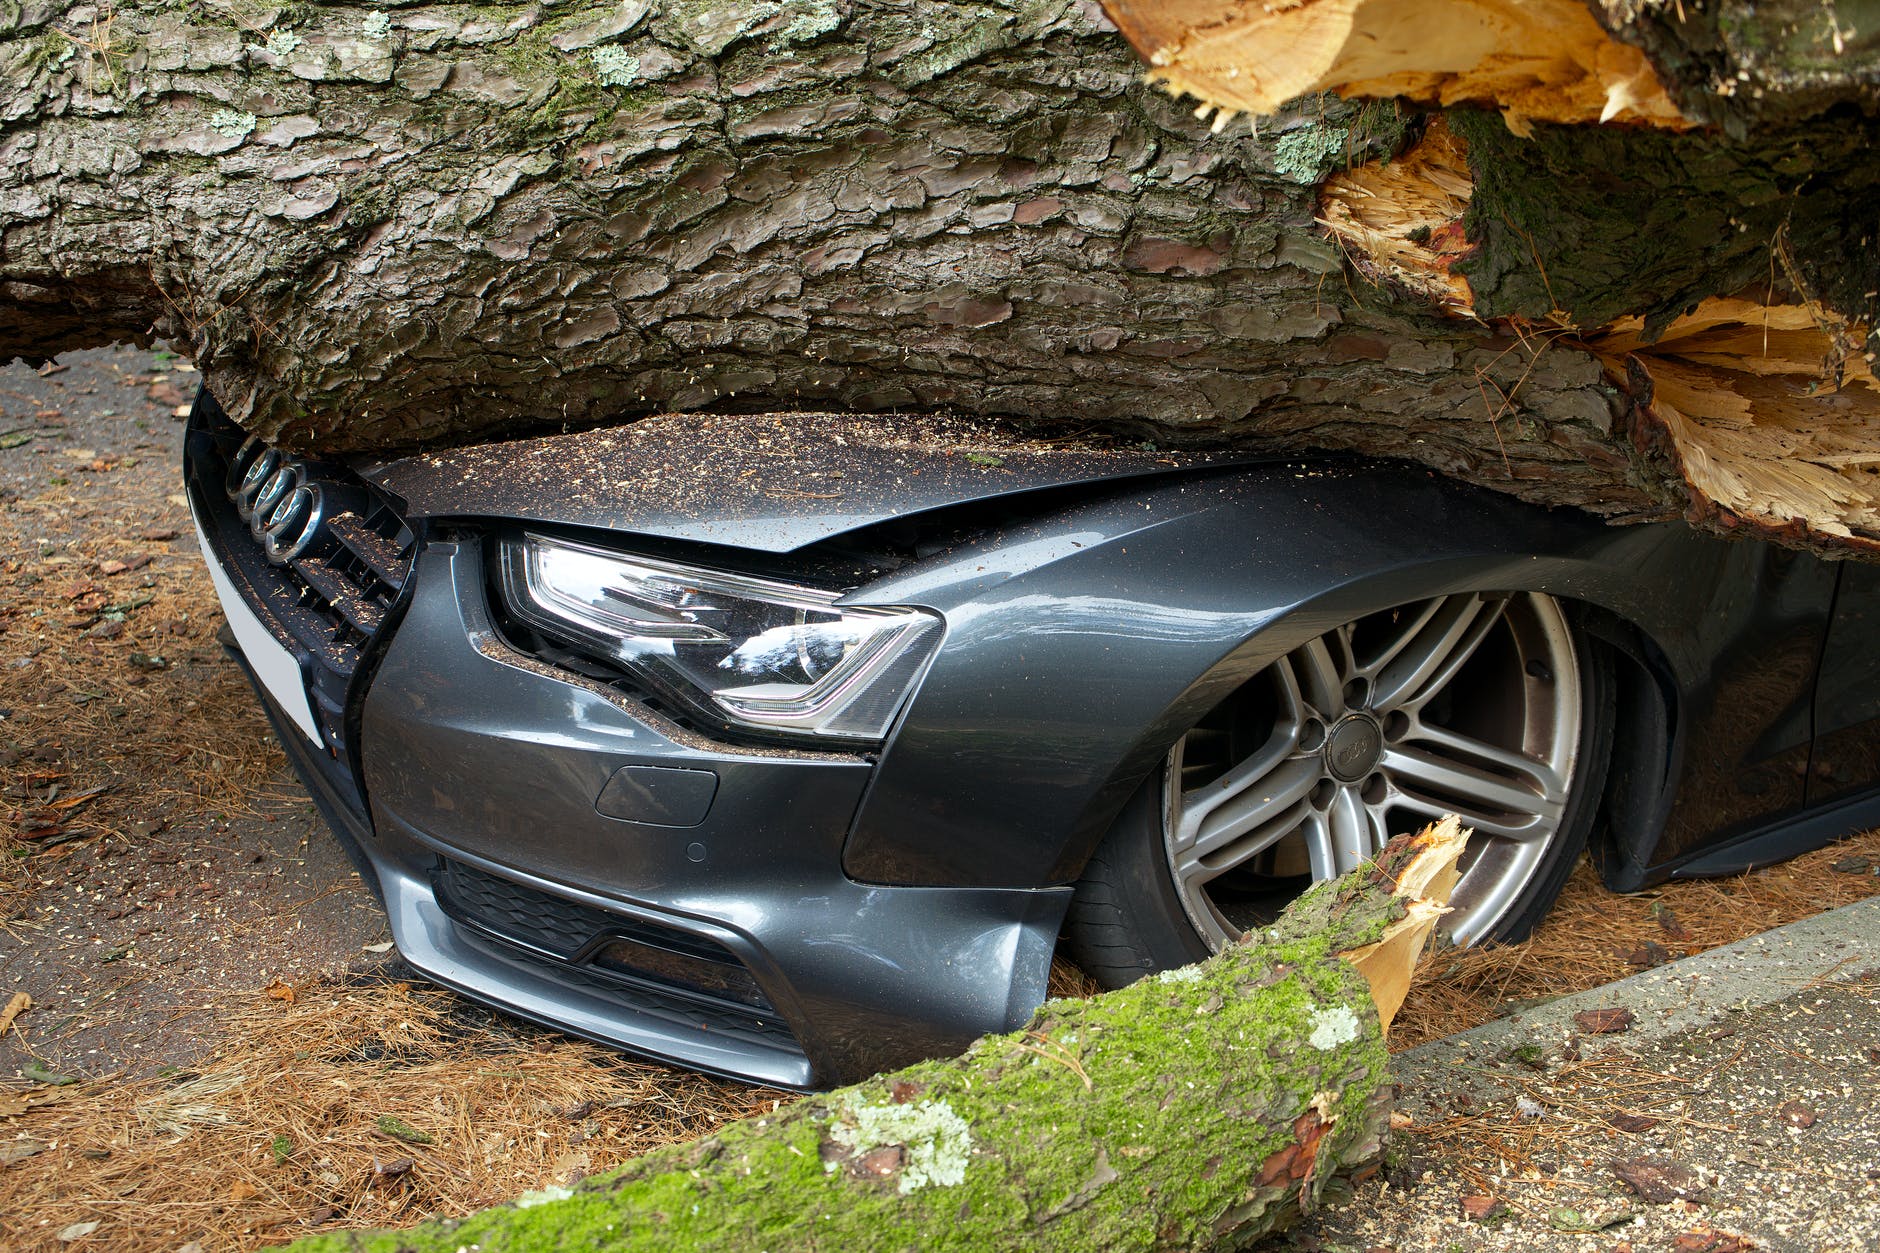 A car had crashed into a tree. | Source: Pexels